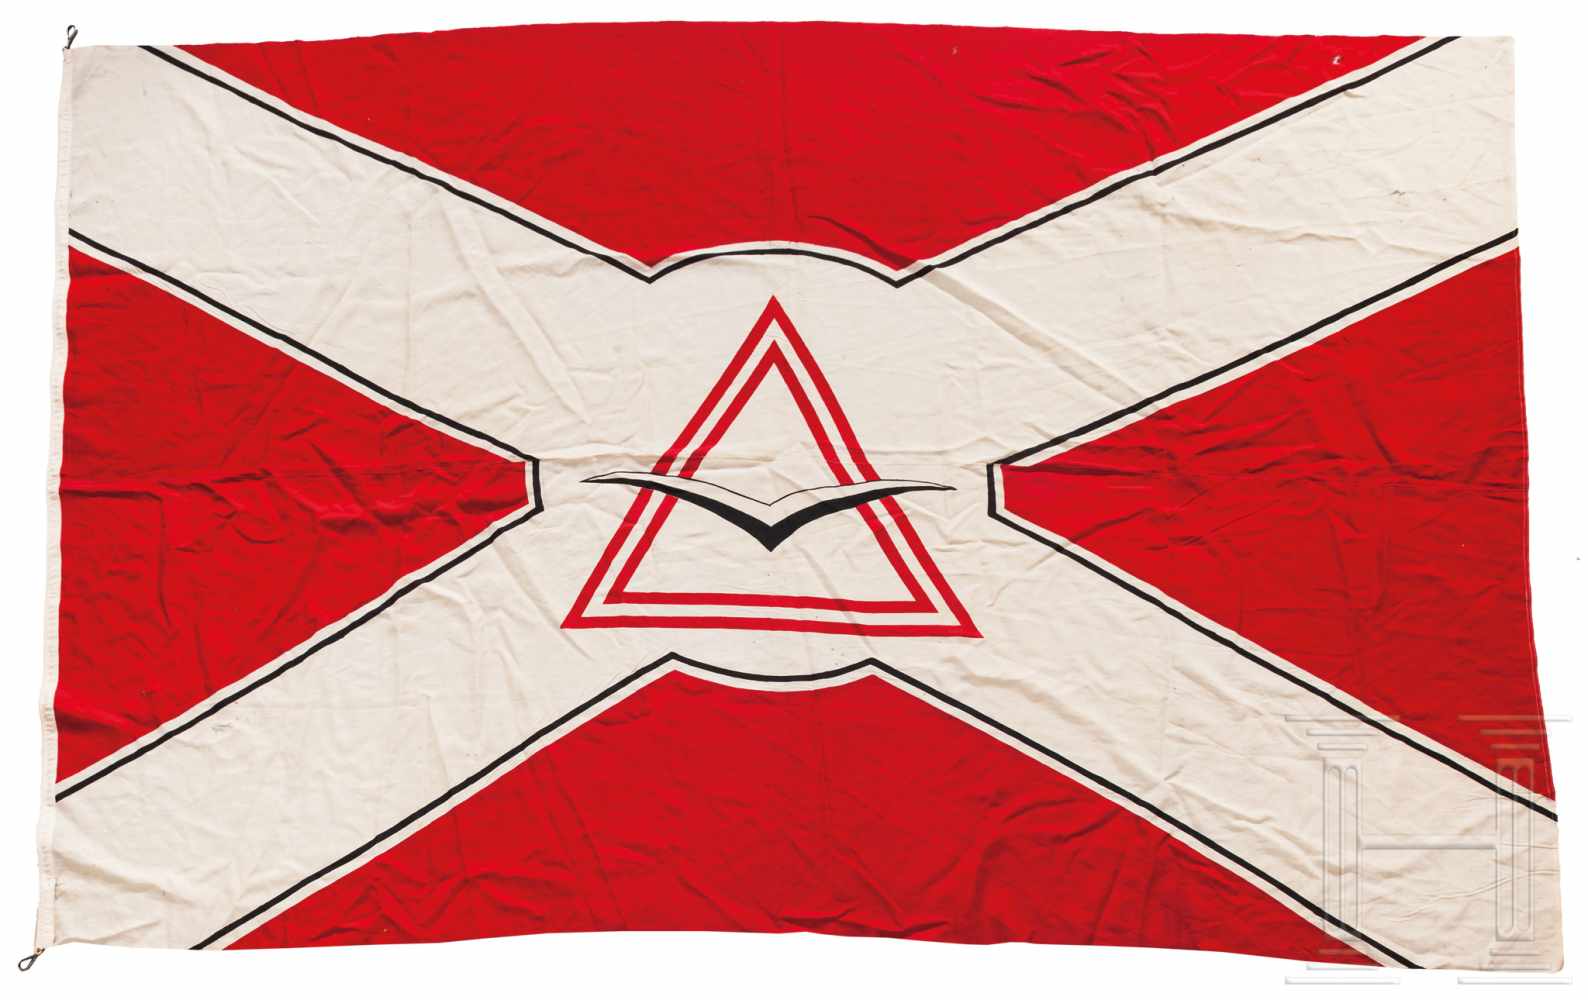 Fahne einer FliegervereinigungIn Schwarz, Weiß und Rot bedrucktes Marinefahnentuch, zweiteilig